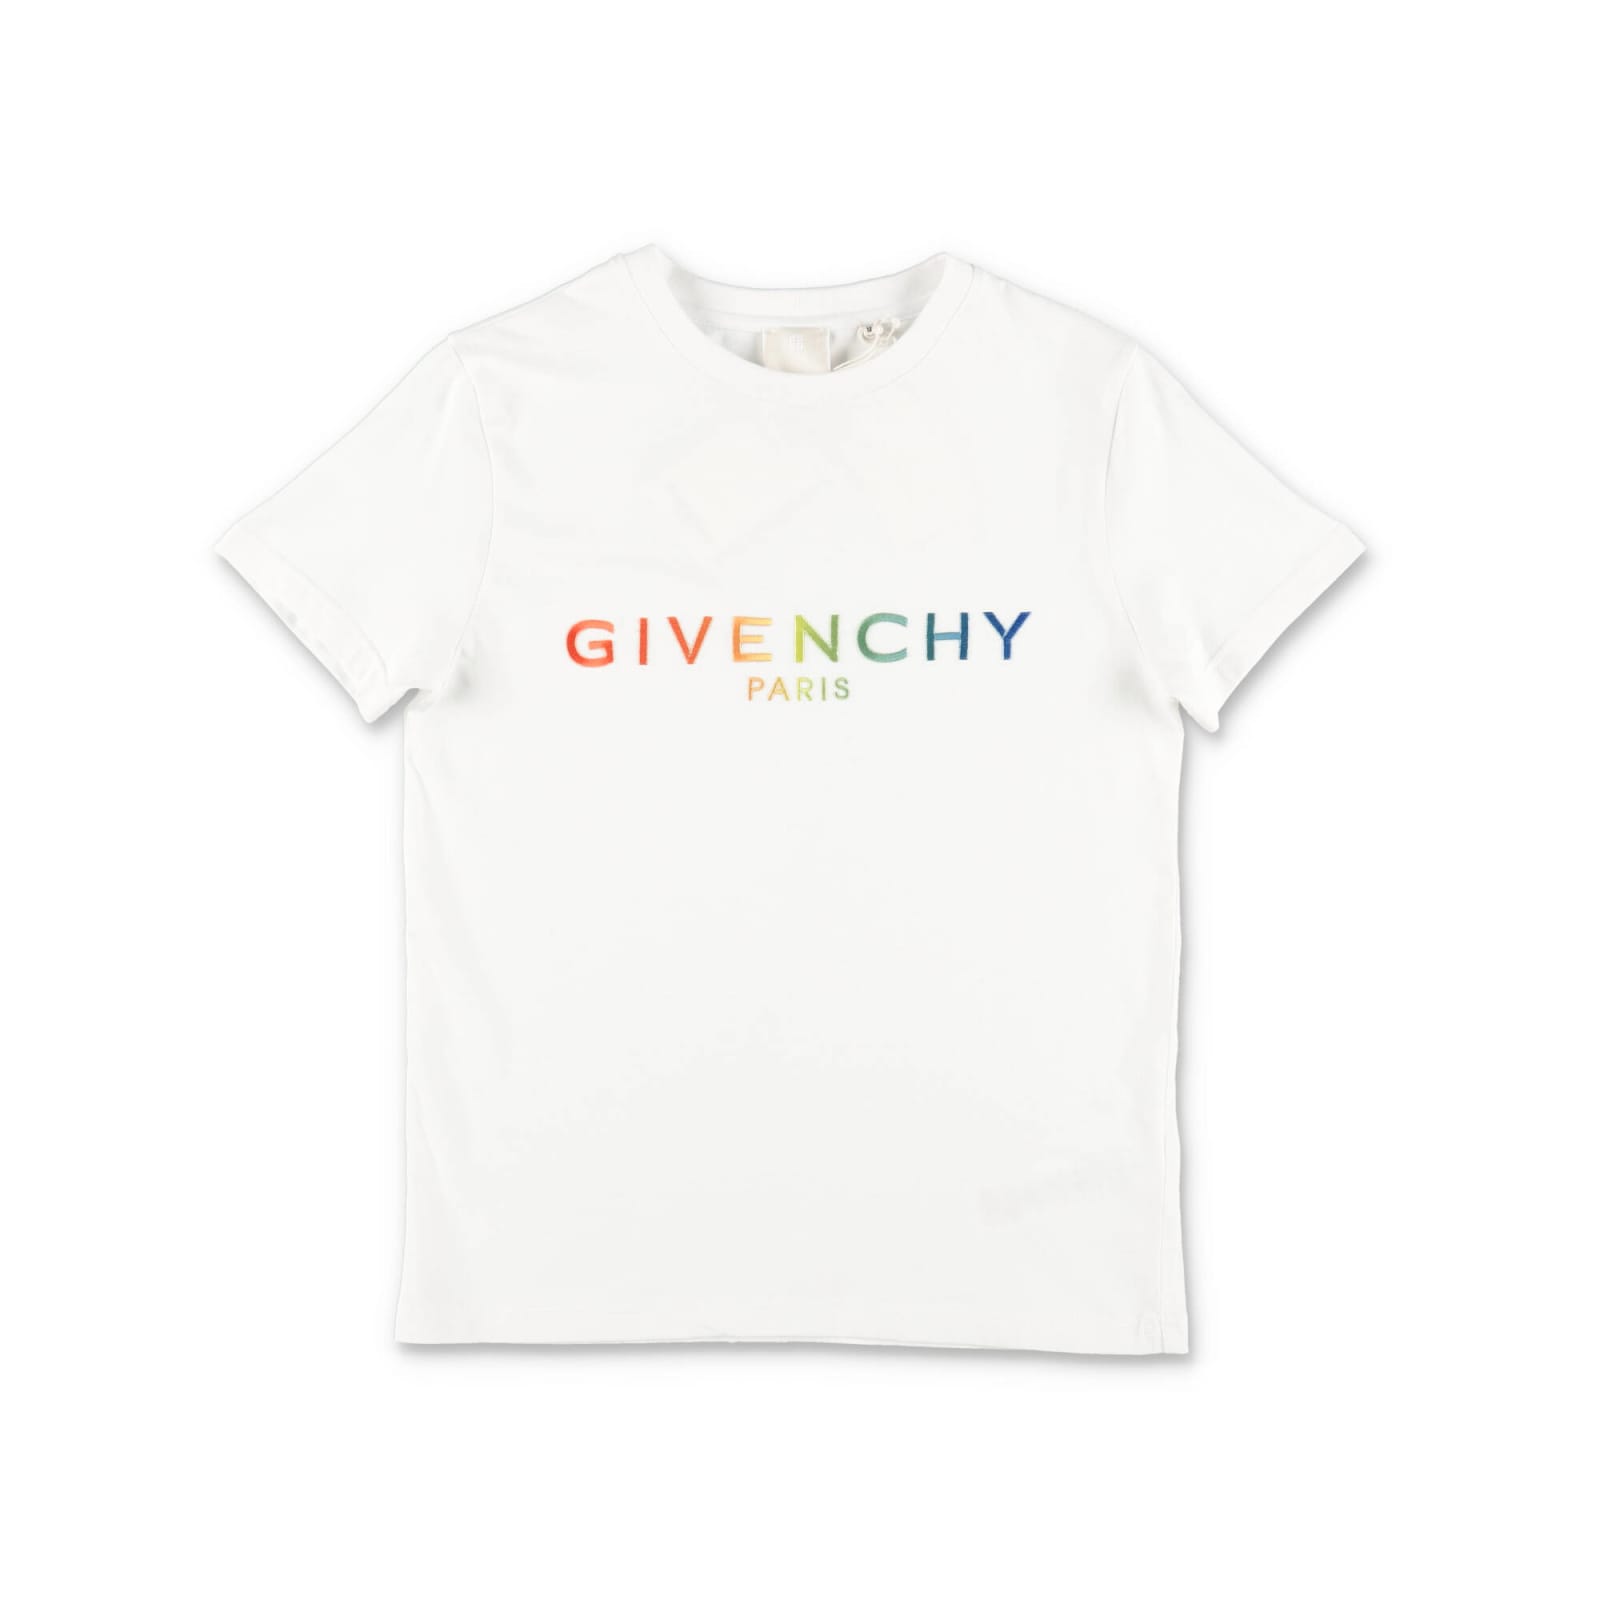 Givenchy T-shirt Bianca In Jersey Di Cotone Bambino